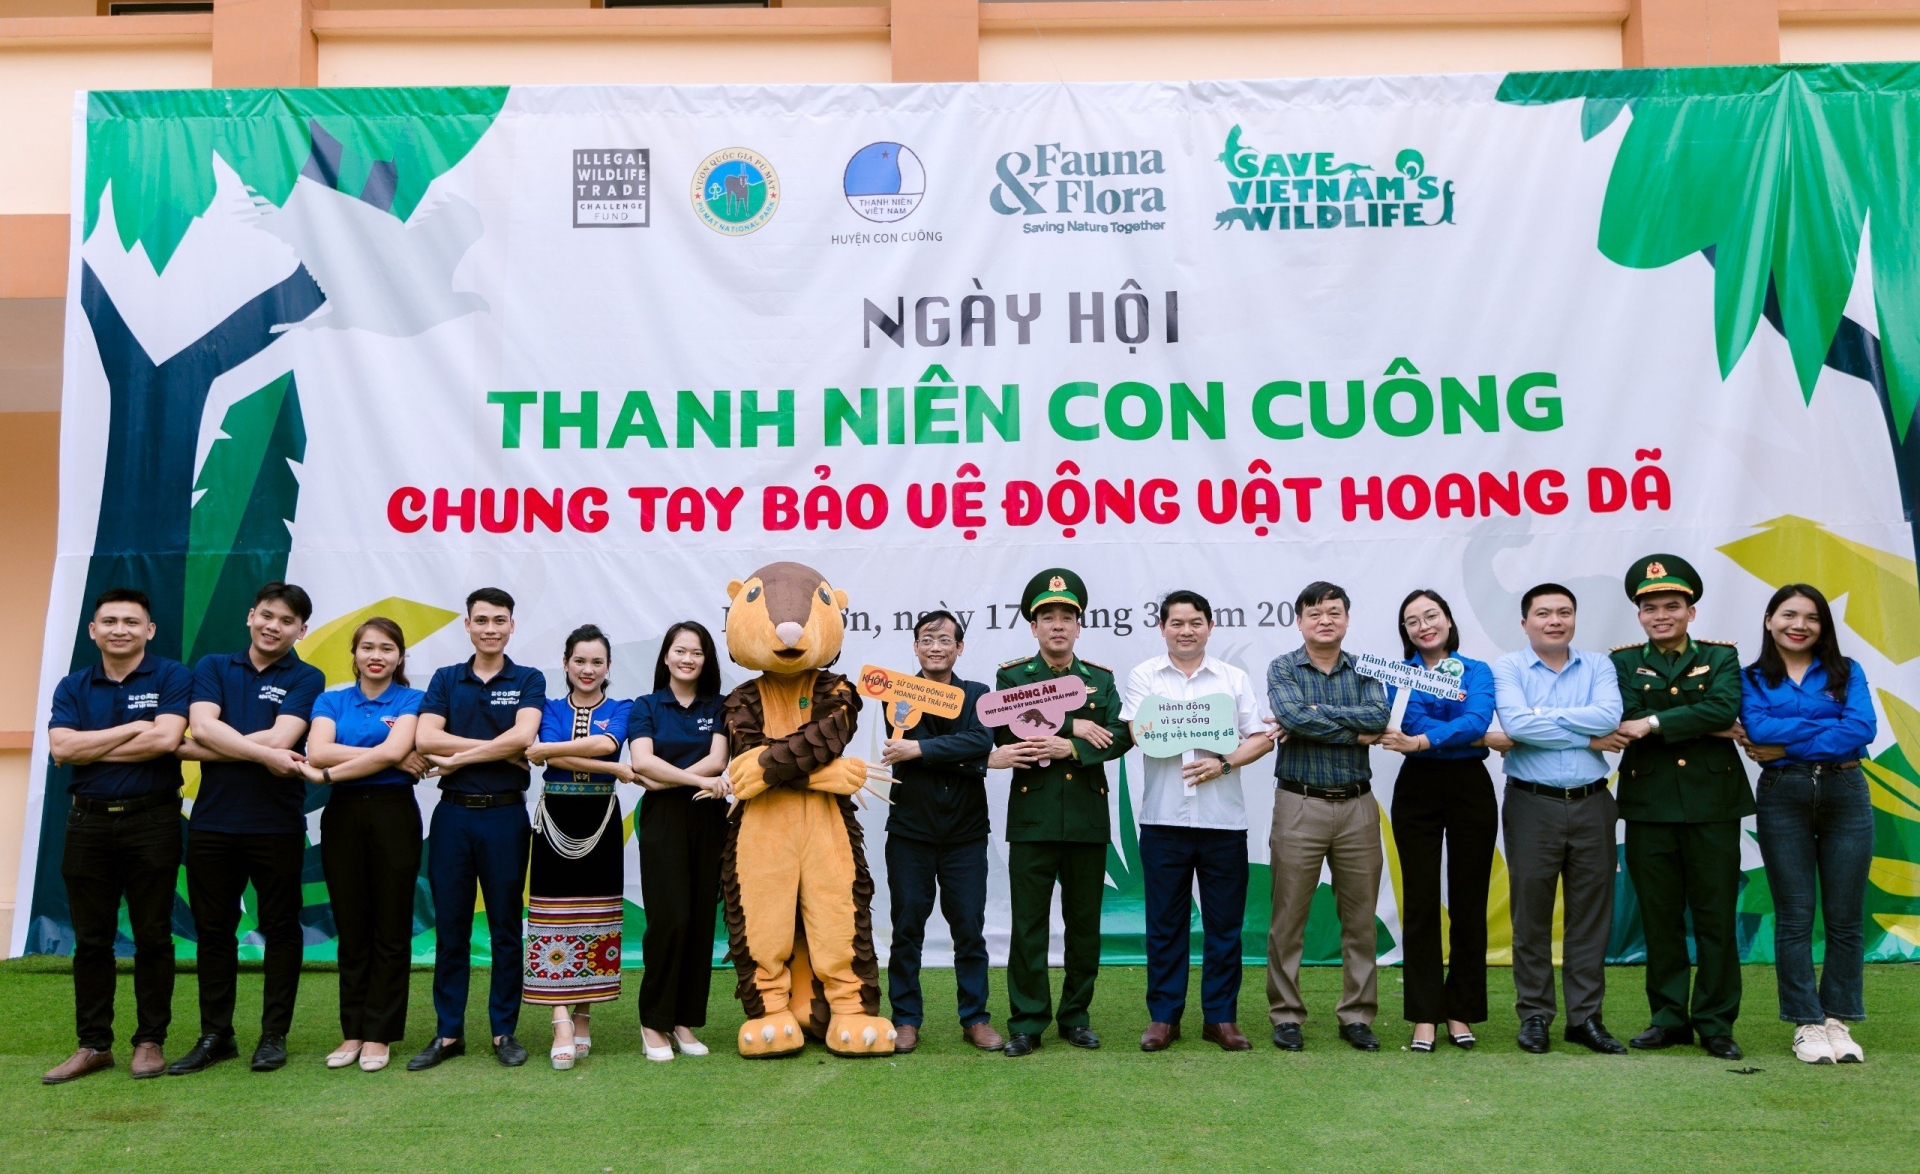 Nghệ An: Tổ chức ngày hội Thanh niên chung tay bảo vệ động vật hoang dã